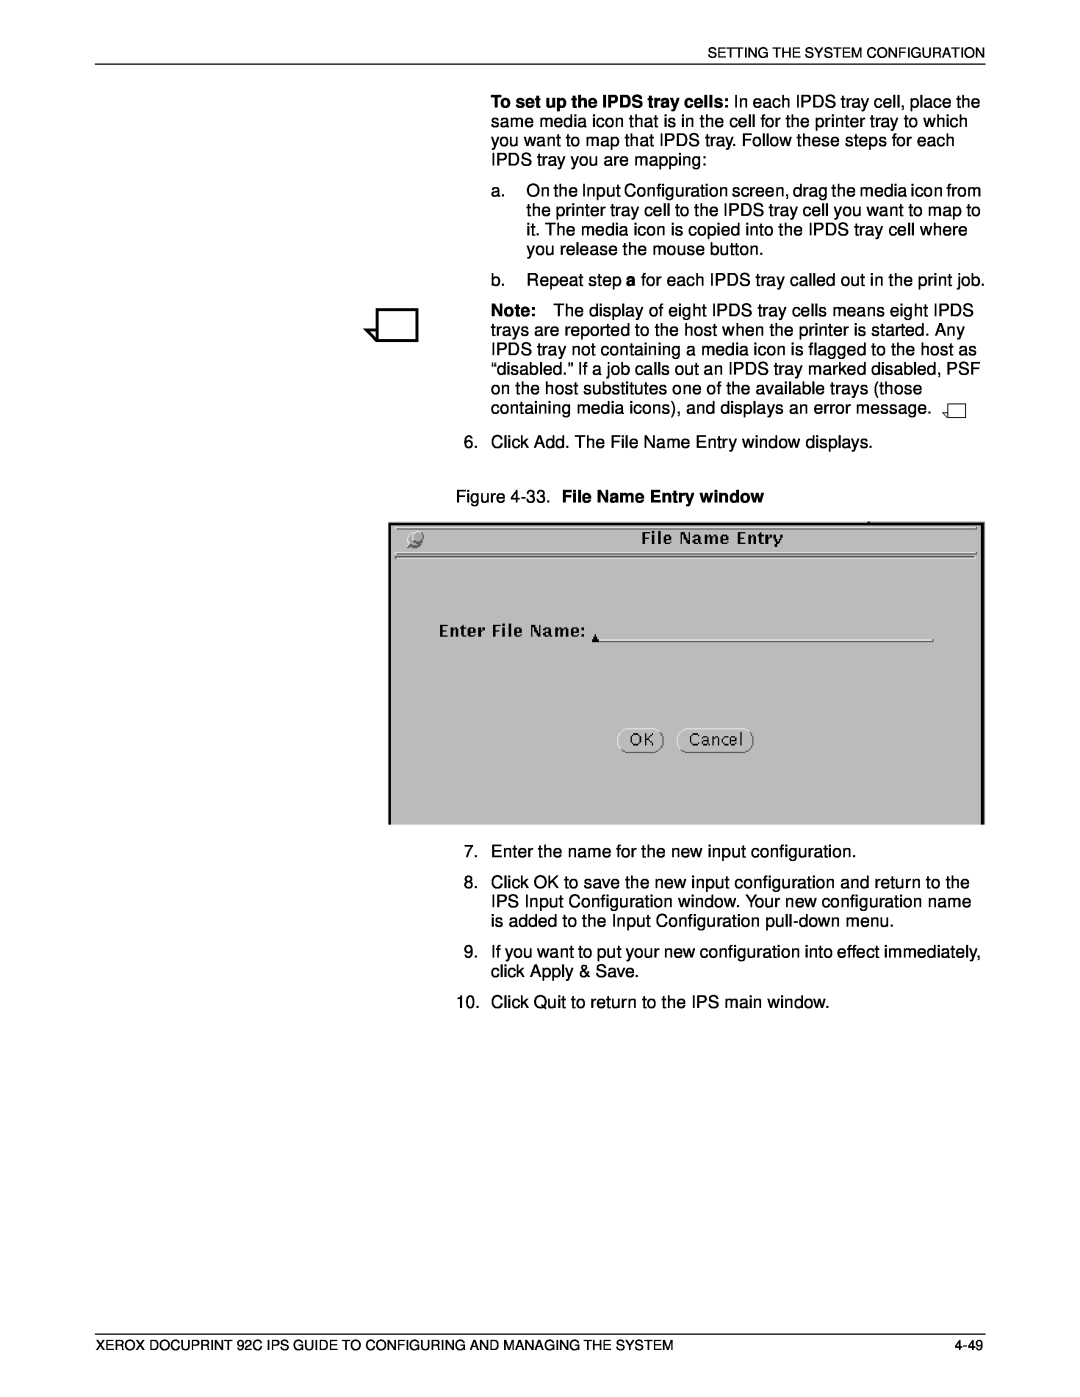 Xerox 92C IPS manual 33. File Name Entry window 